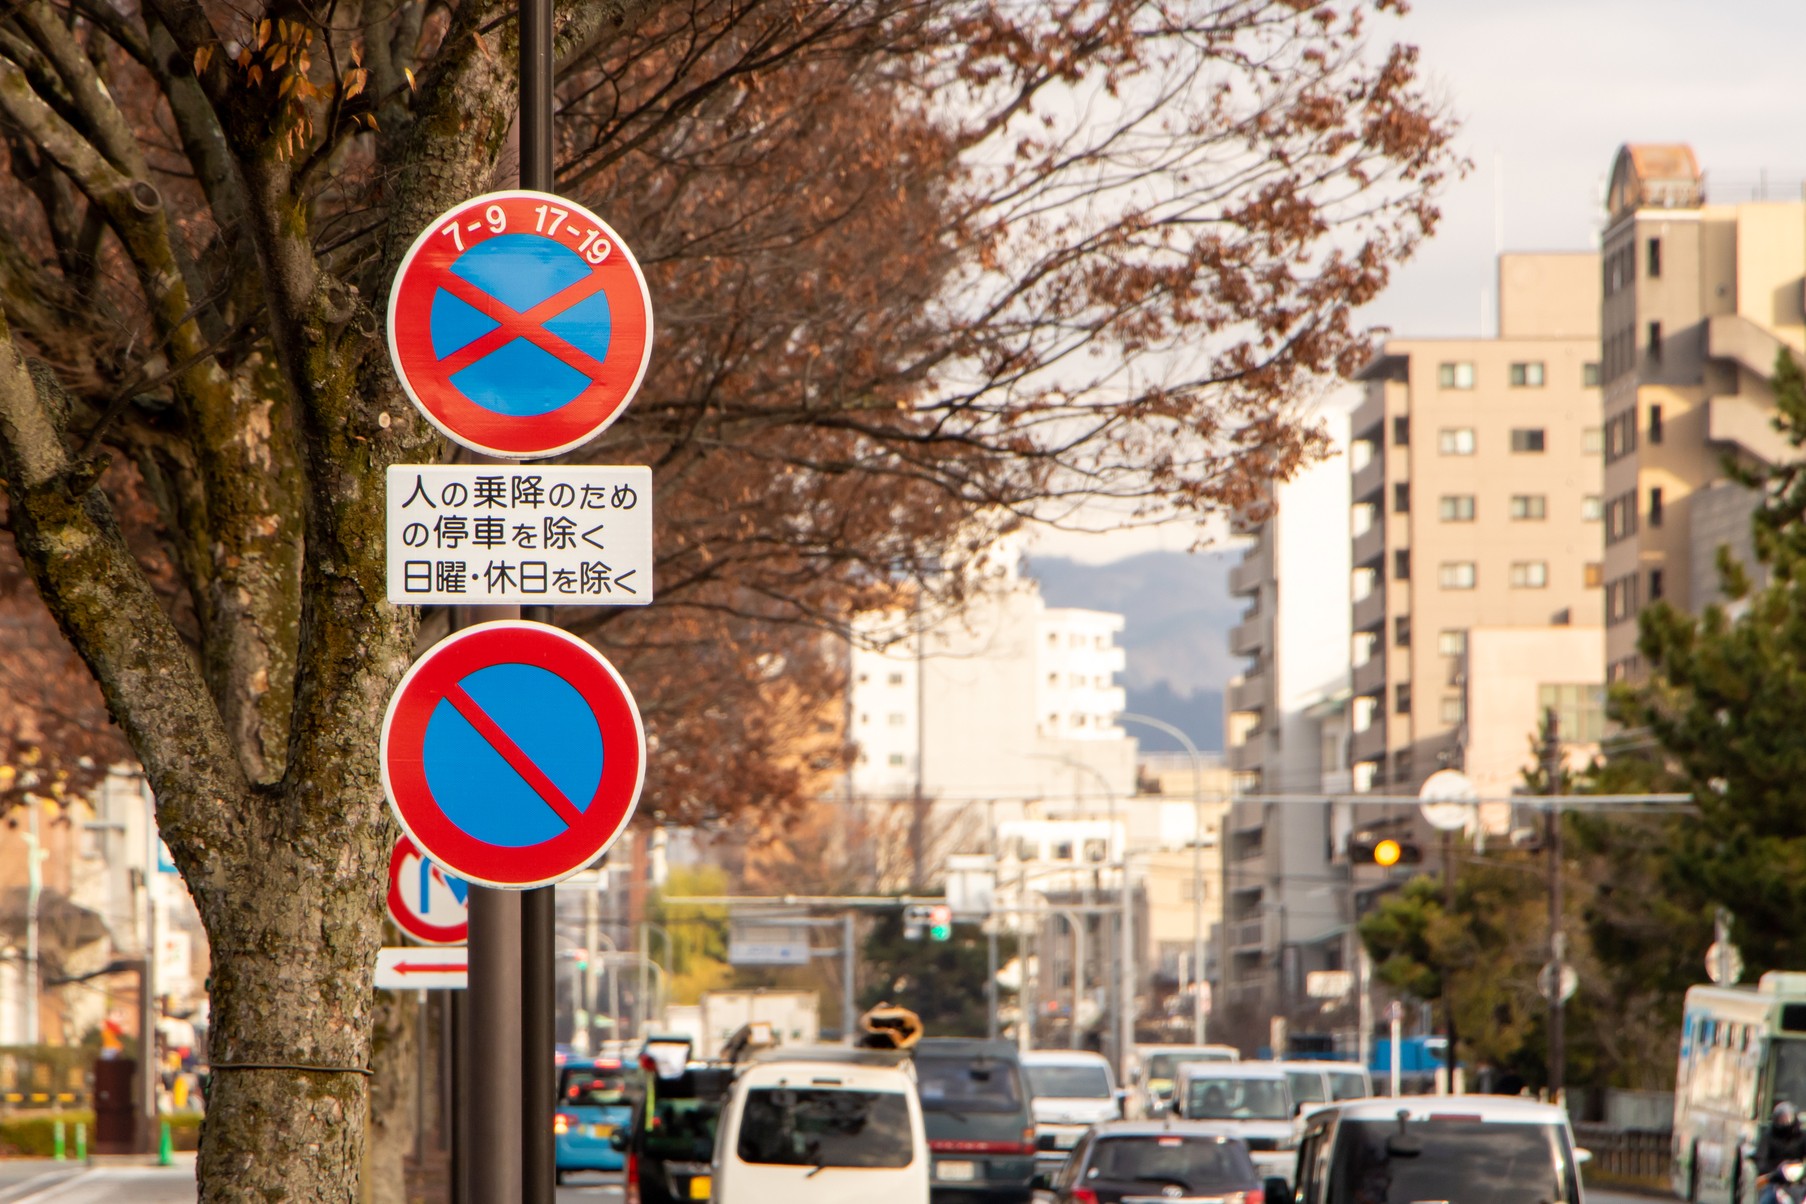 这些标志你看得懂吗 在日本开车须知 道路交通标志基础篇 Tsunagu Local